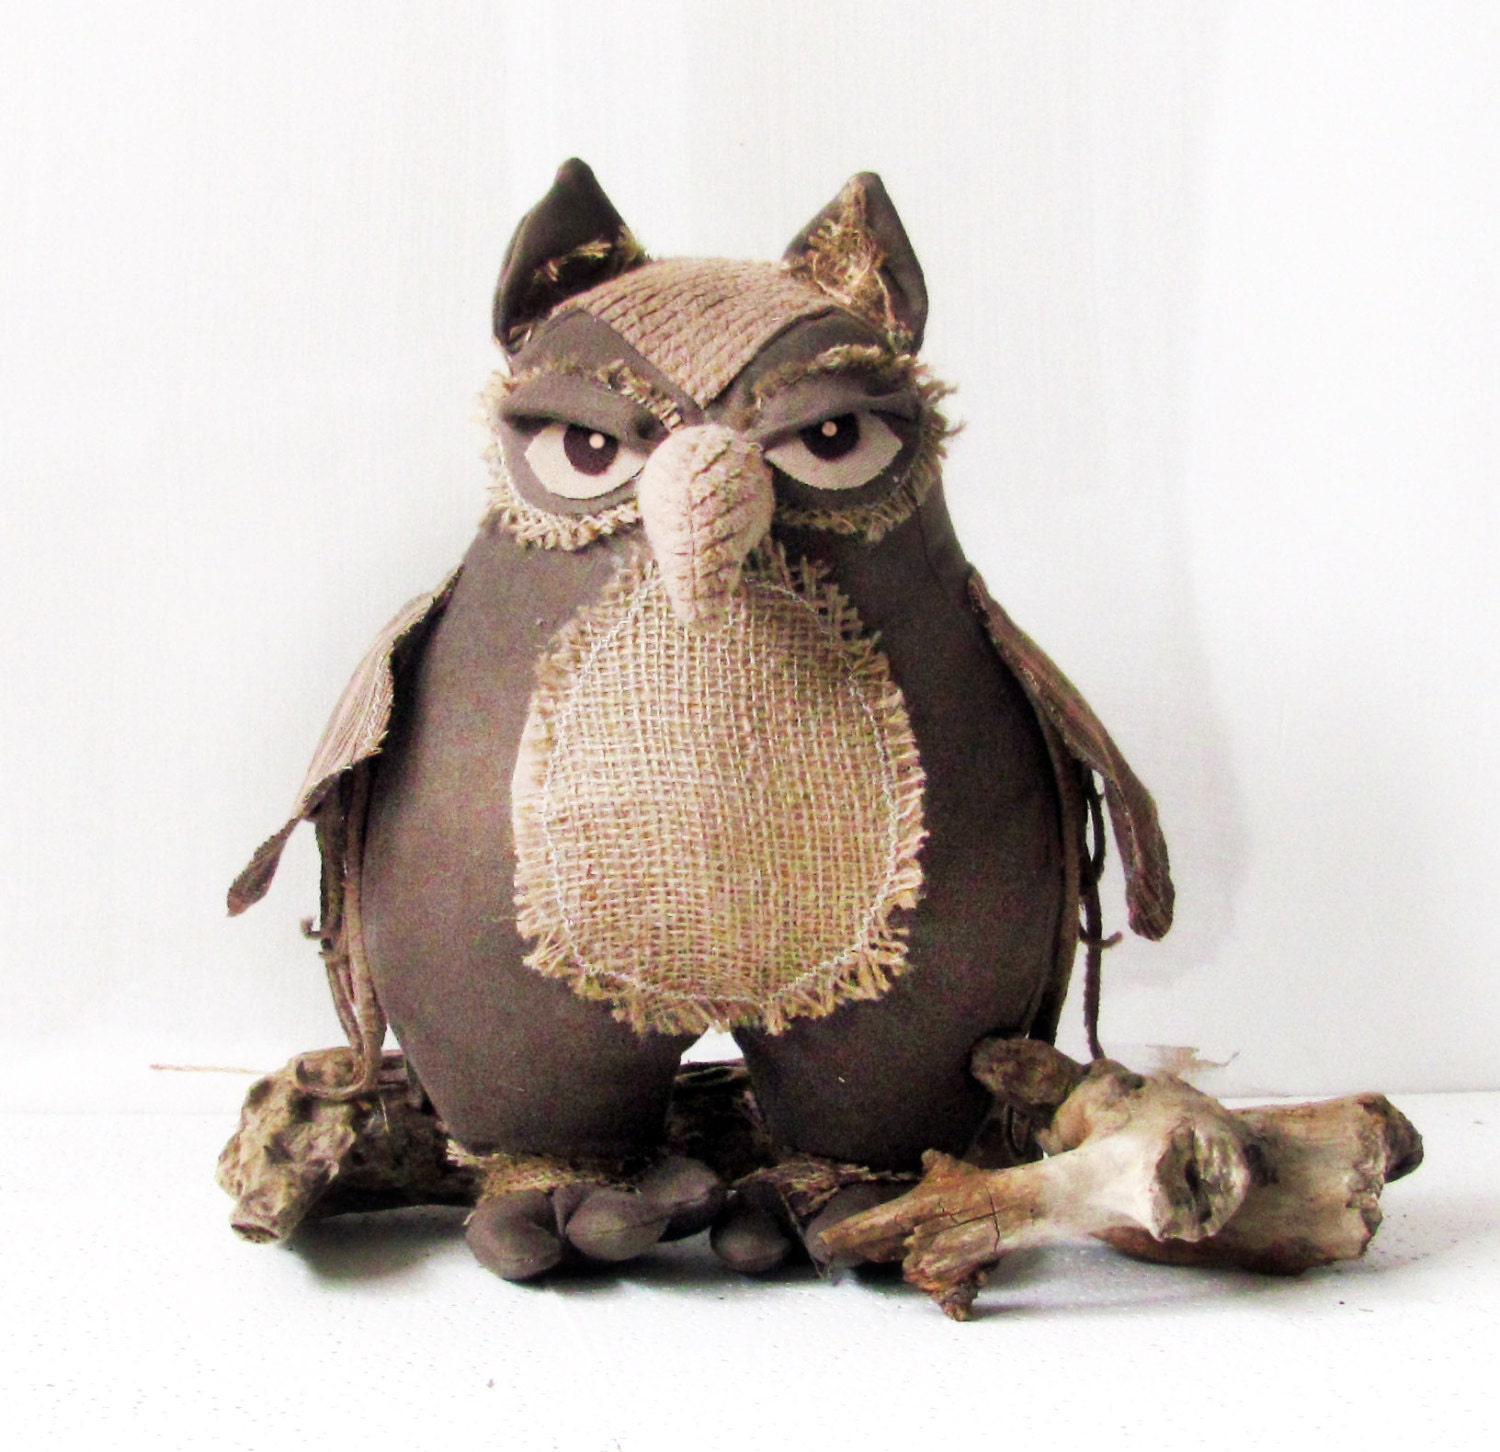 owlowl decor handmade owl Home Decor Ornament owl